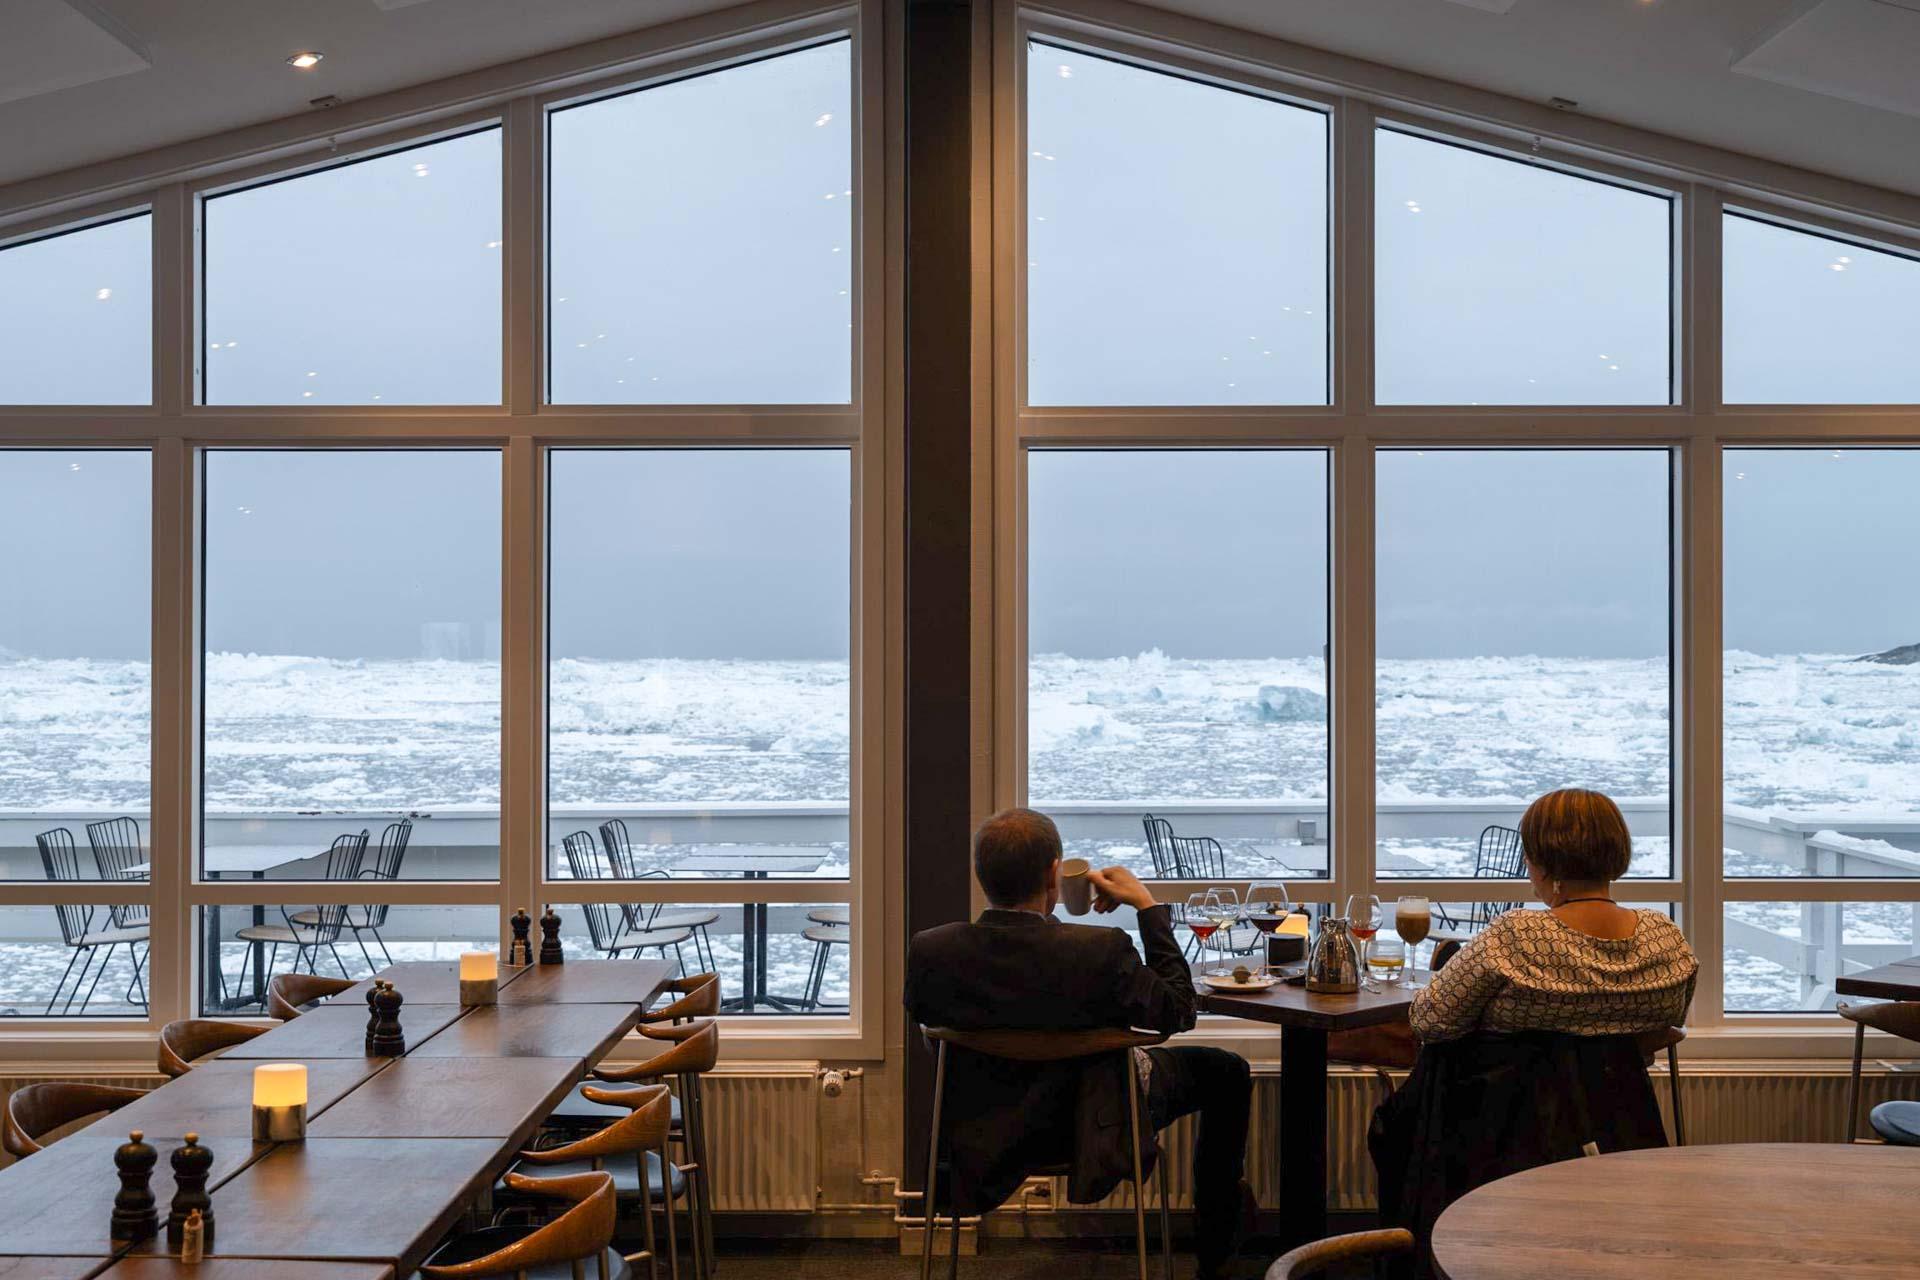 L’hôtel et son restaurant offrent une vue imprenable sur la mer. © DB